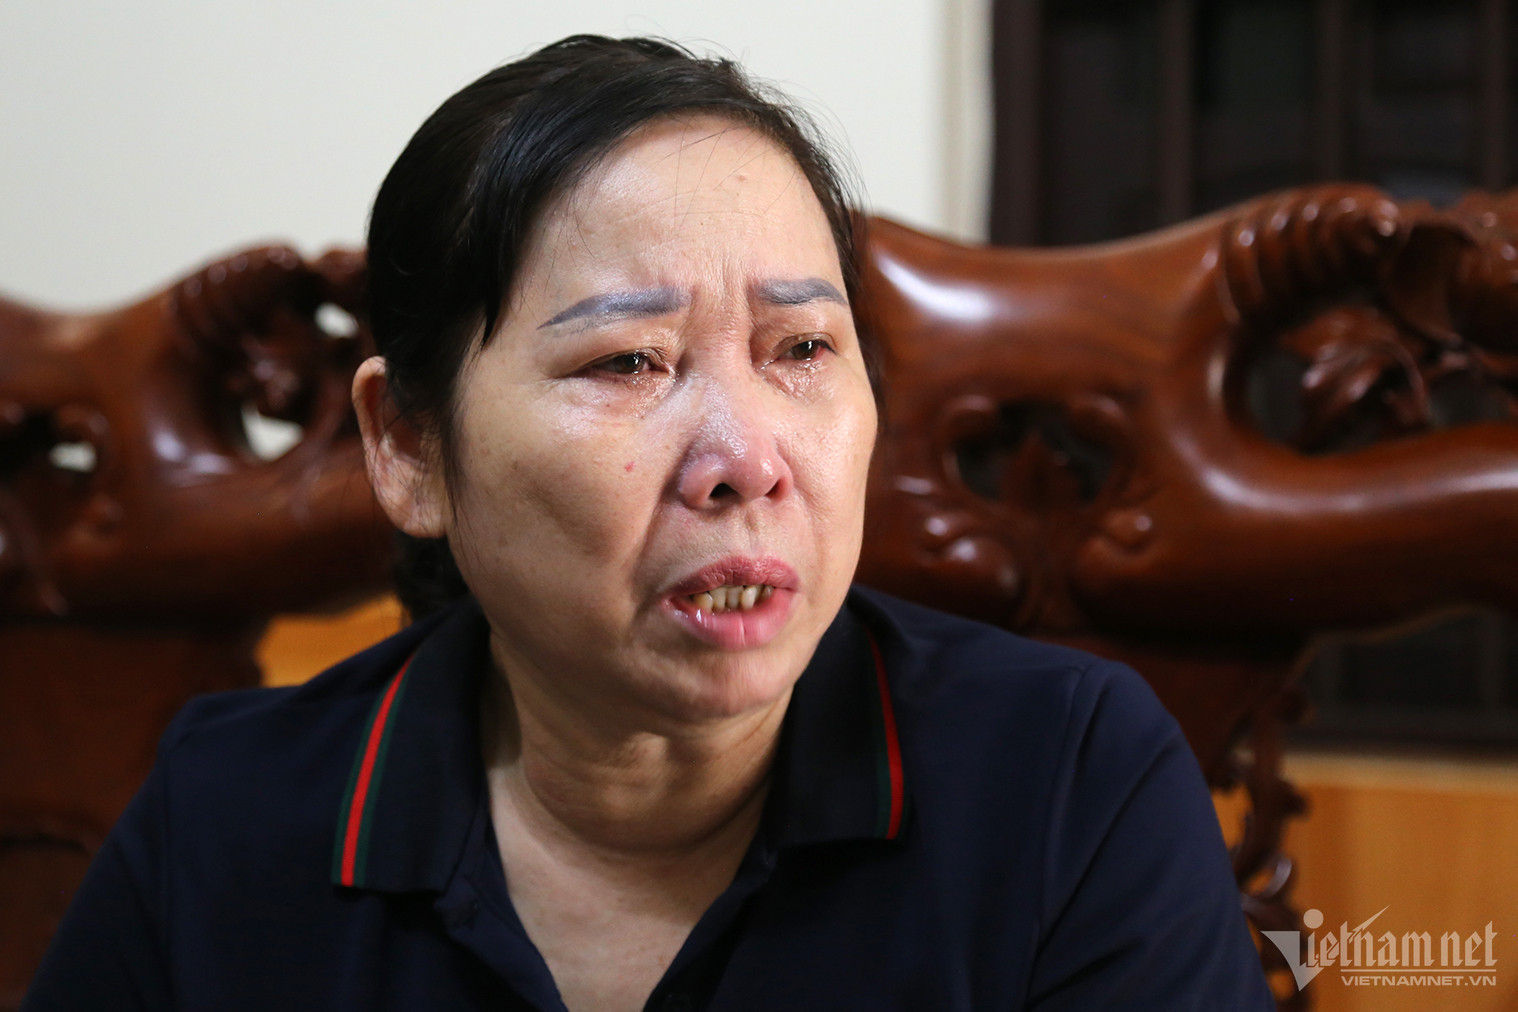 Nén nỗi đau trời thấu, người mẹ ở Quảng Ninh có quyết định cứu được 7 người-1